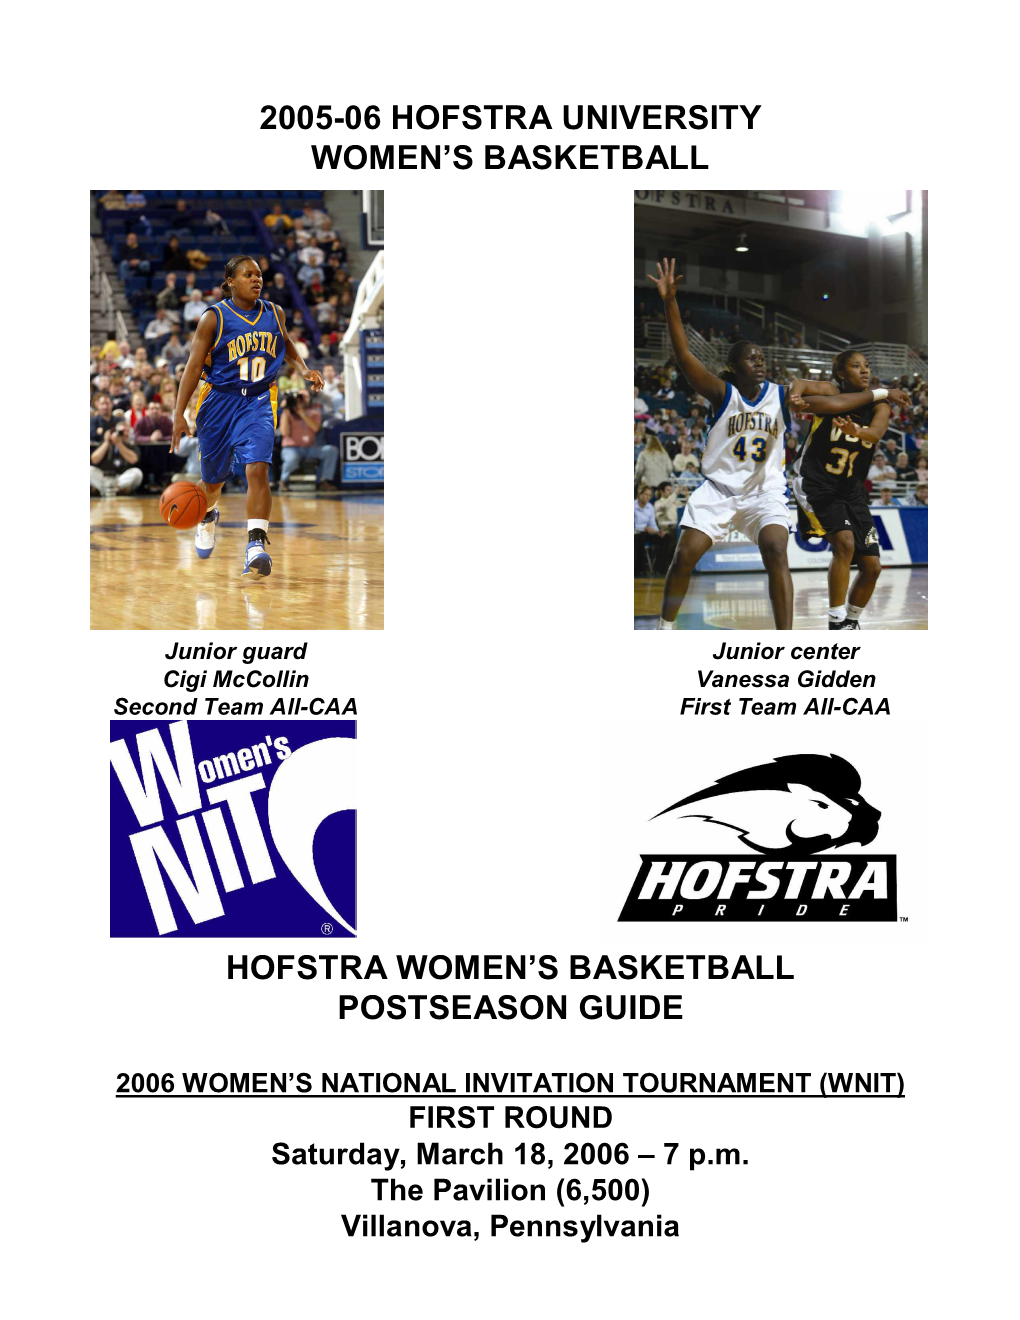 2005-06 Hofstra University Women's Basketball Roster